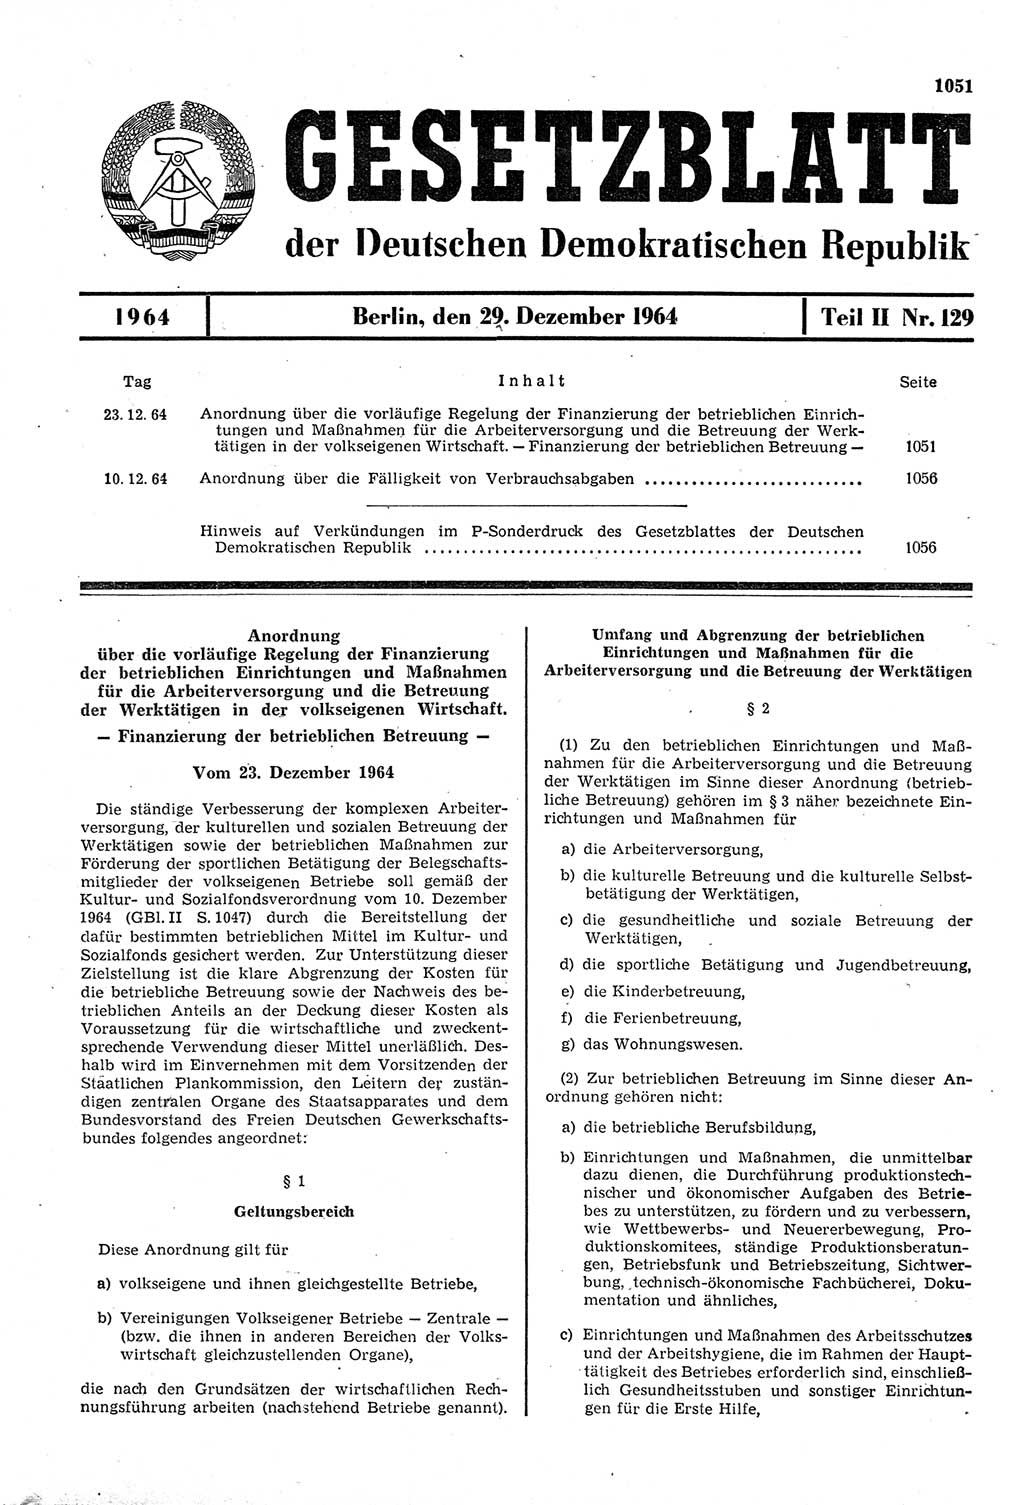 Gesetzblatt (GBl.) der Deutschen Demokratischen Republik (DDR) Teil ⅠⅠ 1964, Seite 1051 (GBl. DDR ⅠⅠ 1964, S. 1051)